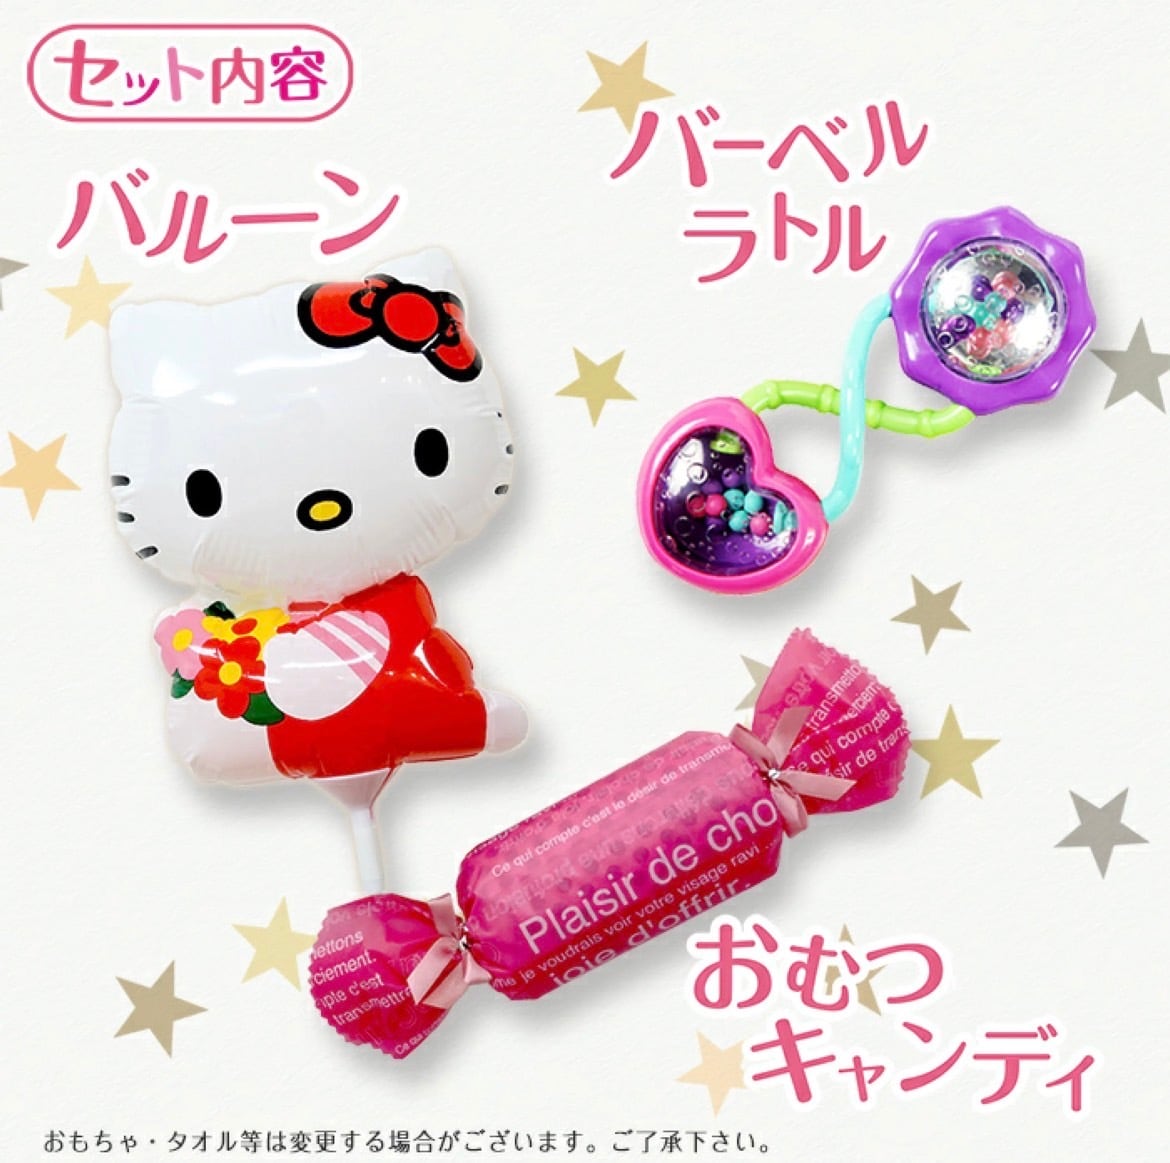 Hello Kitty おむつケーキ キティちゃん 出産祝い gift】 | Baby Love